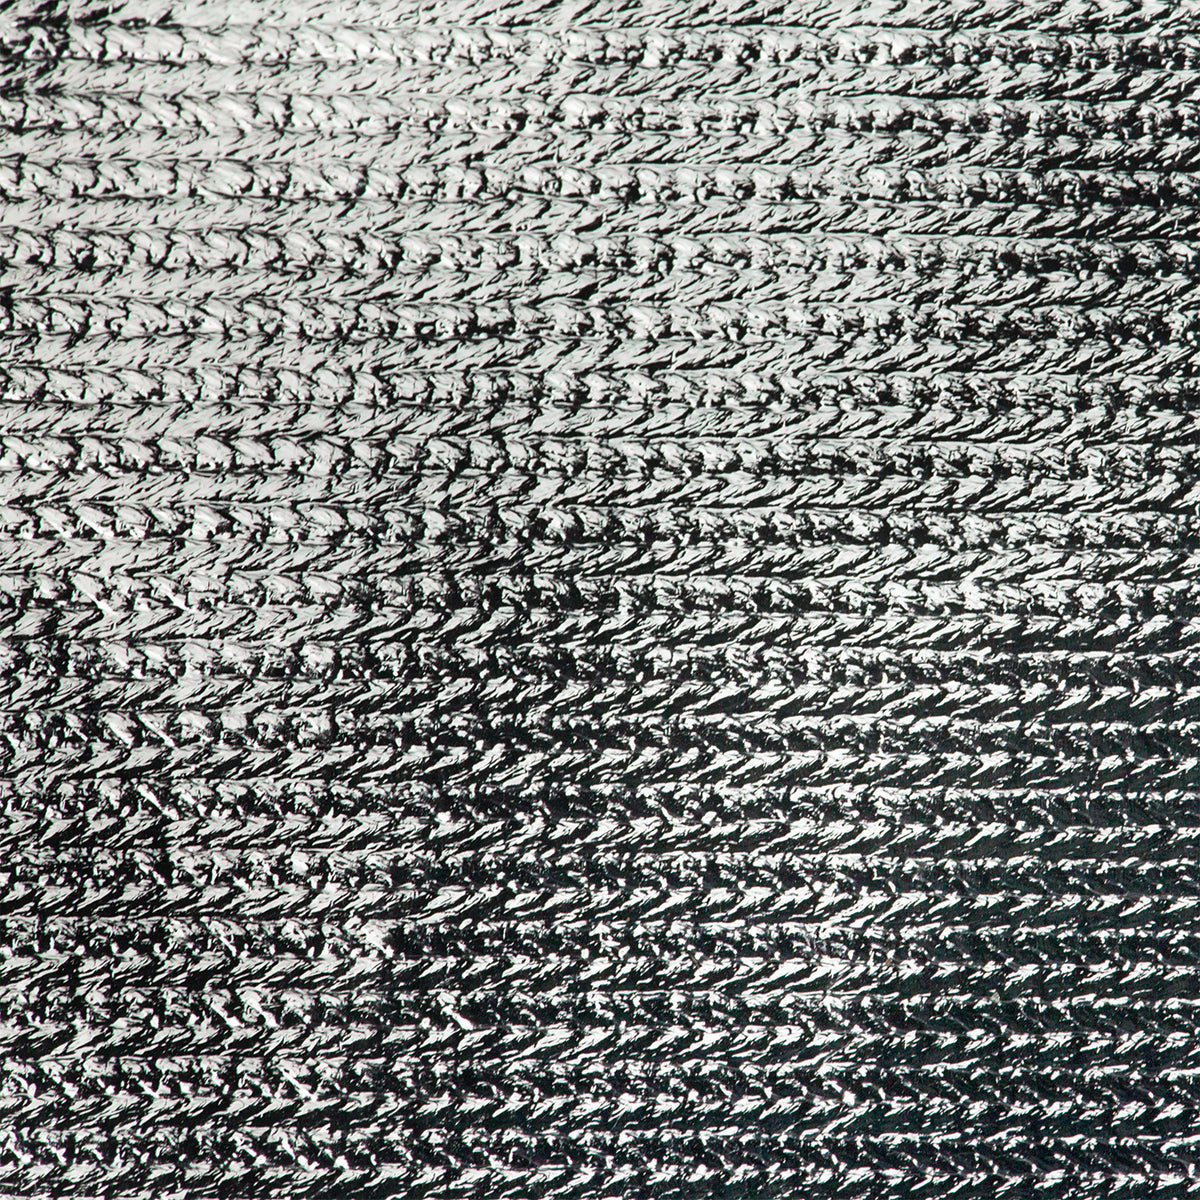 Scrim Jim Cine 2-in-1 Silver/White Bounce Fabric (4' x 6')